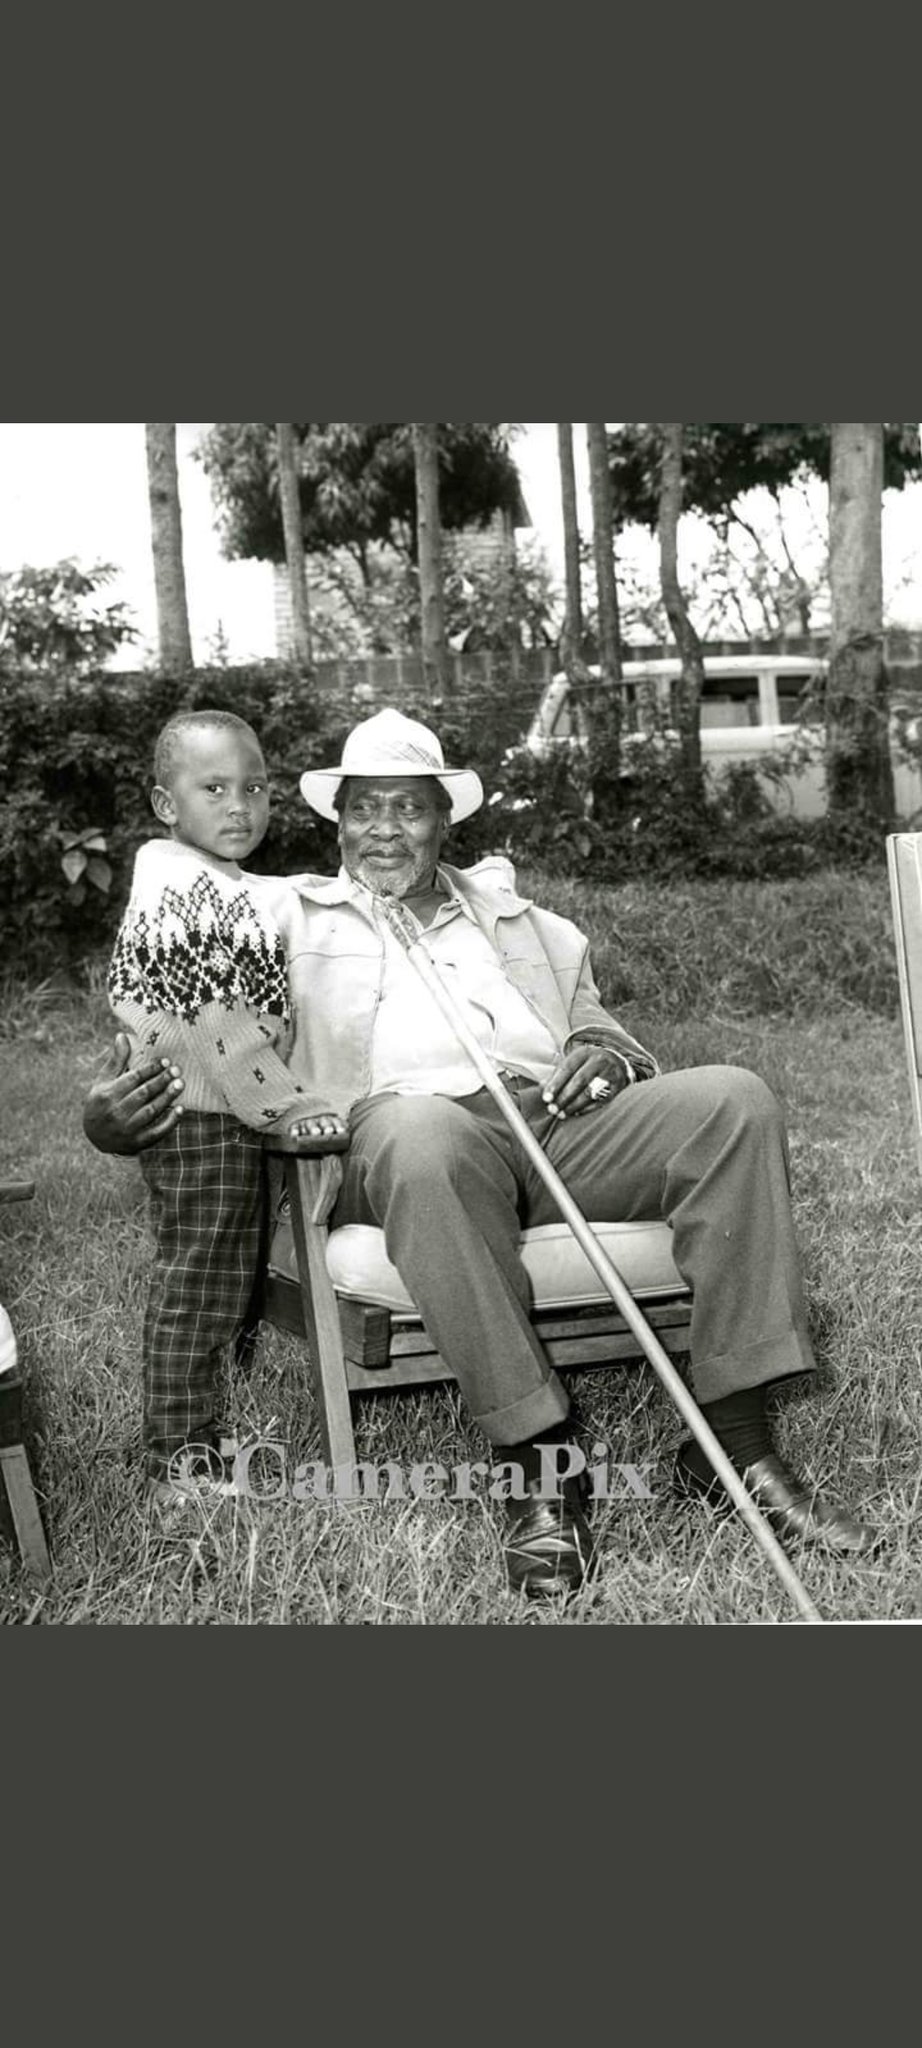 Happy birthday Fomer president Uhuru Kenyatta 